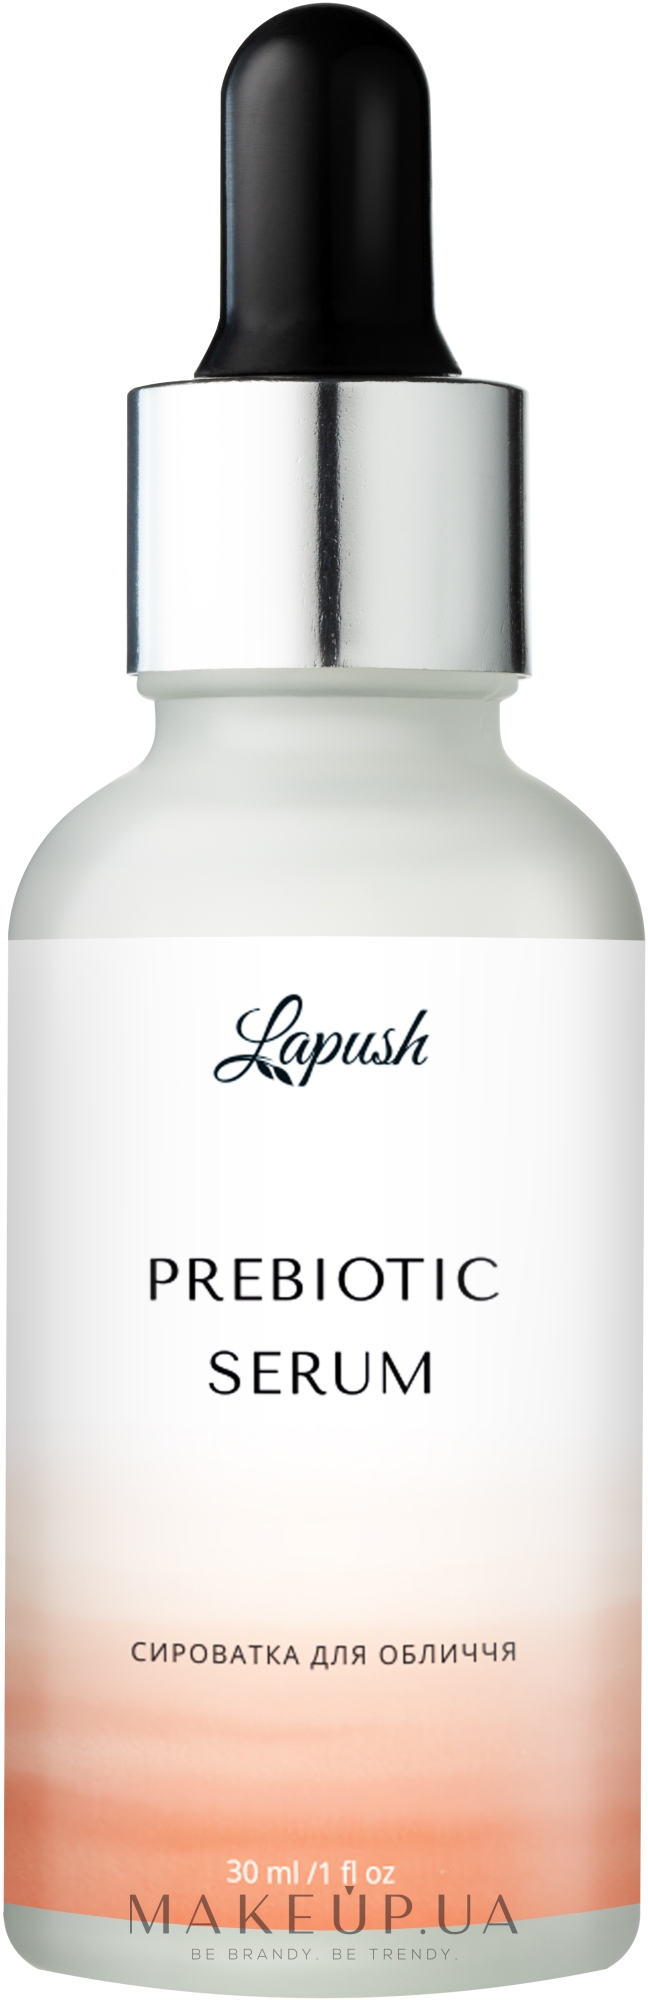 Сироватка для обличчя з пребіотиком - Lapush Prebiotic Serum — фото 30ml